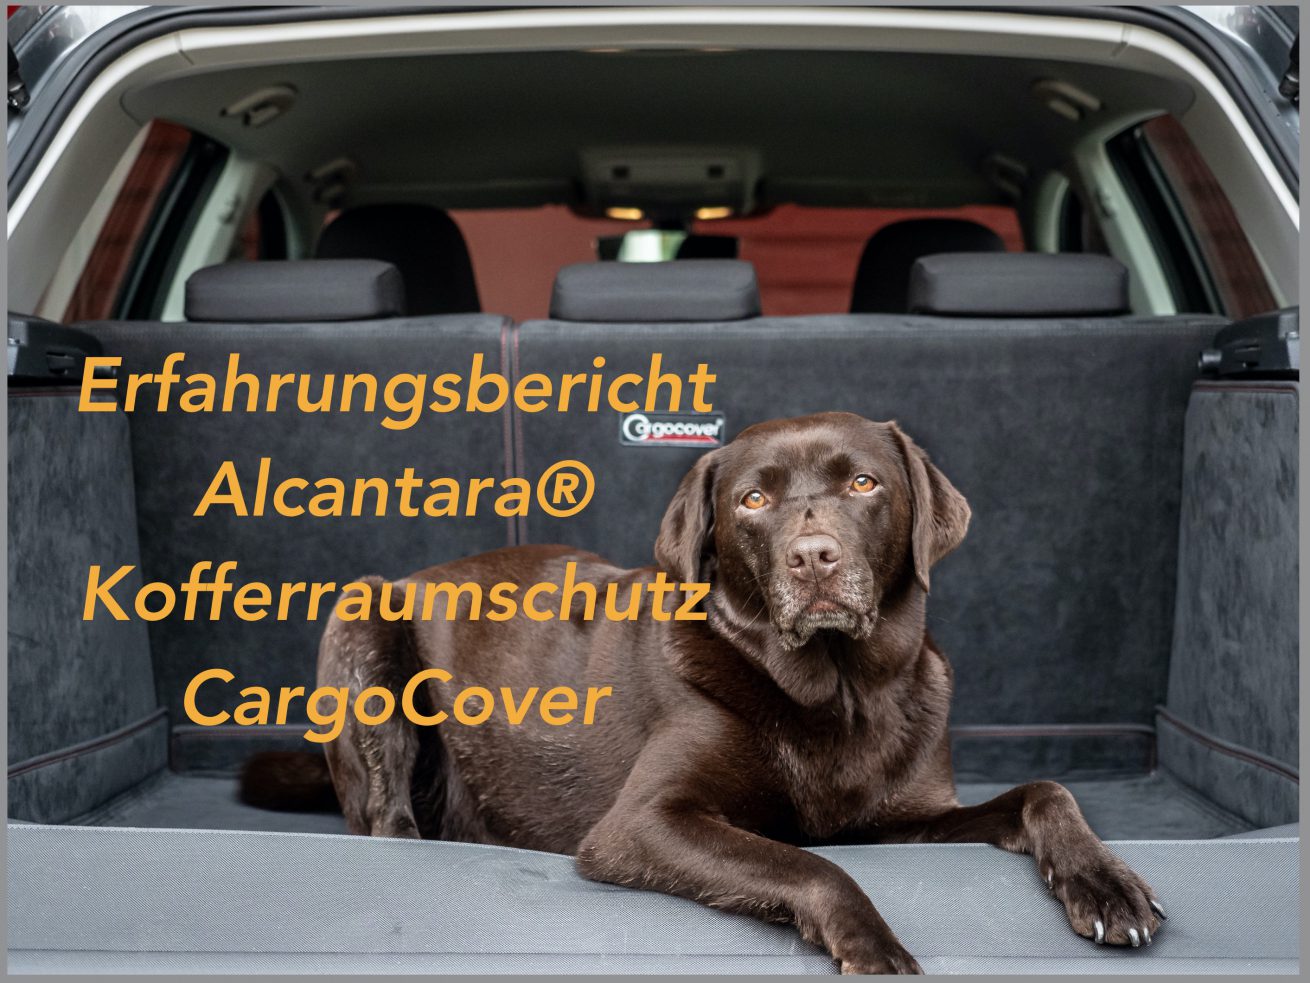 Erfahrungsbericht CargoCover Kofferraumschutz für den Hund